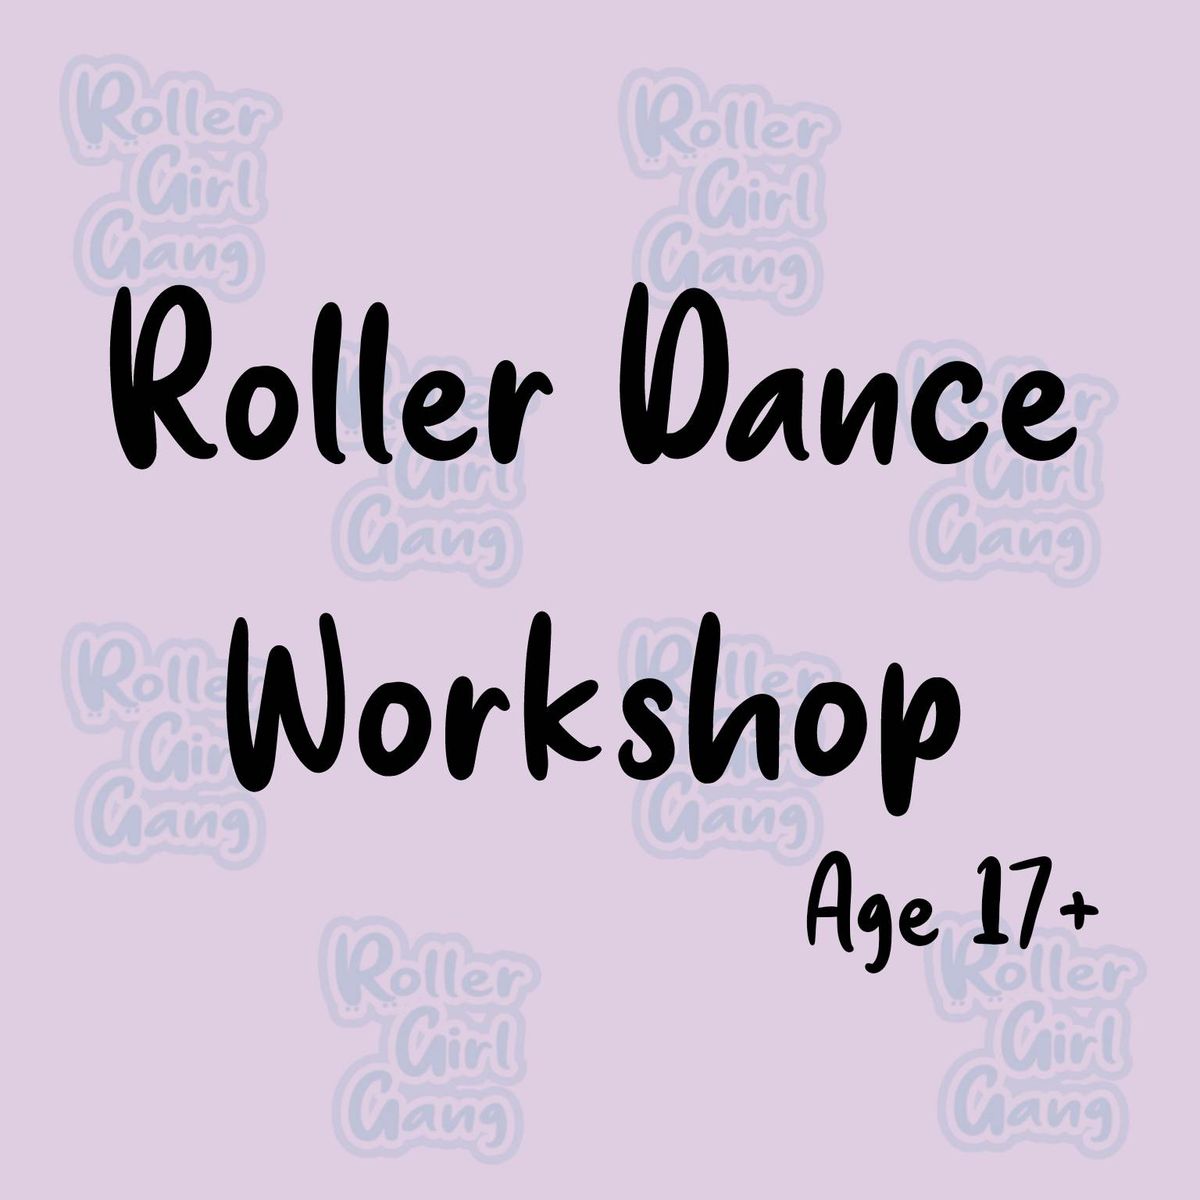 Roller Dance Skills Workshop 17+